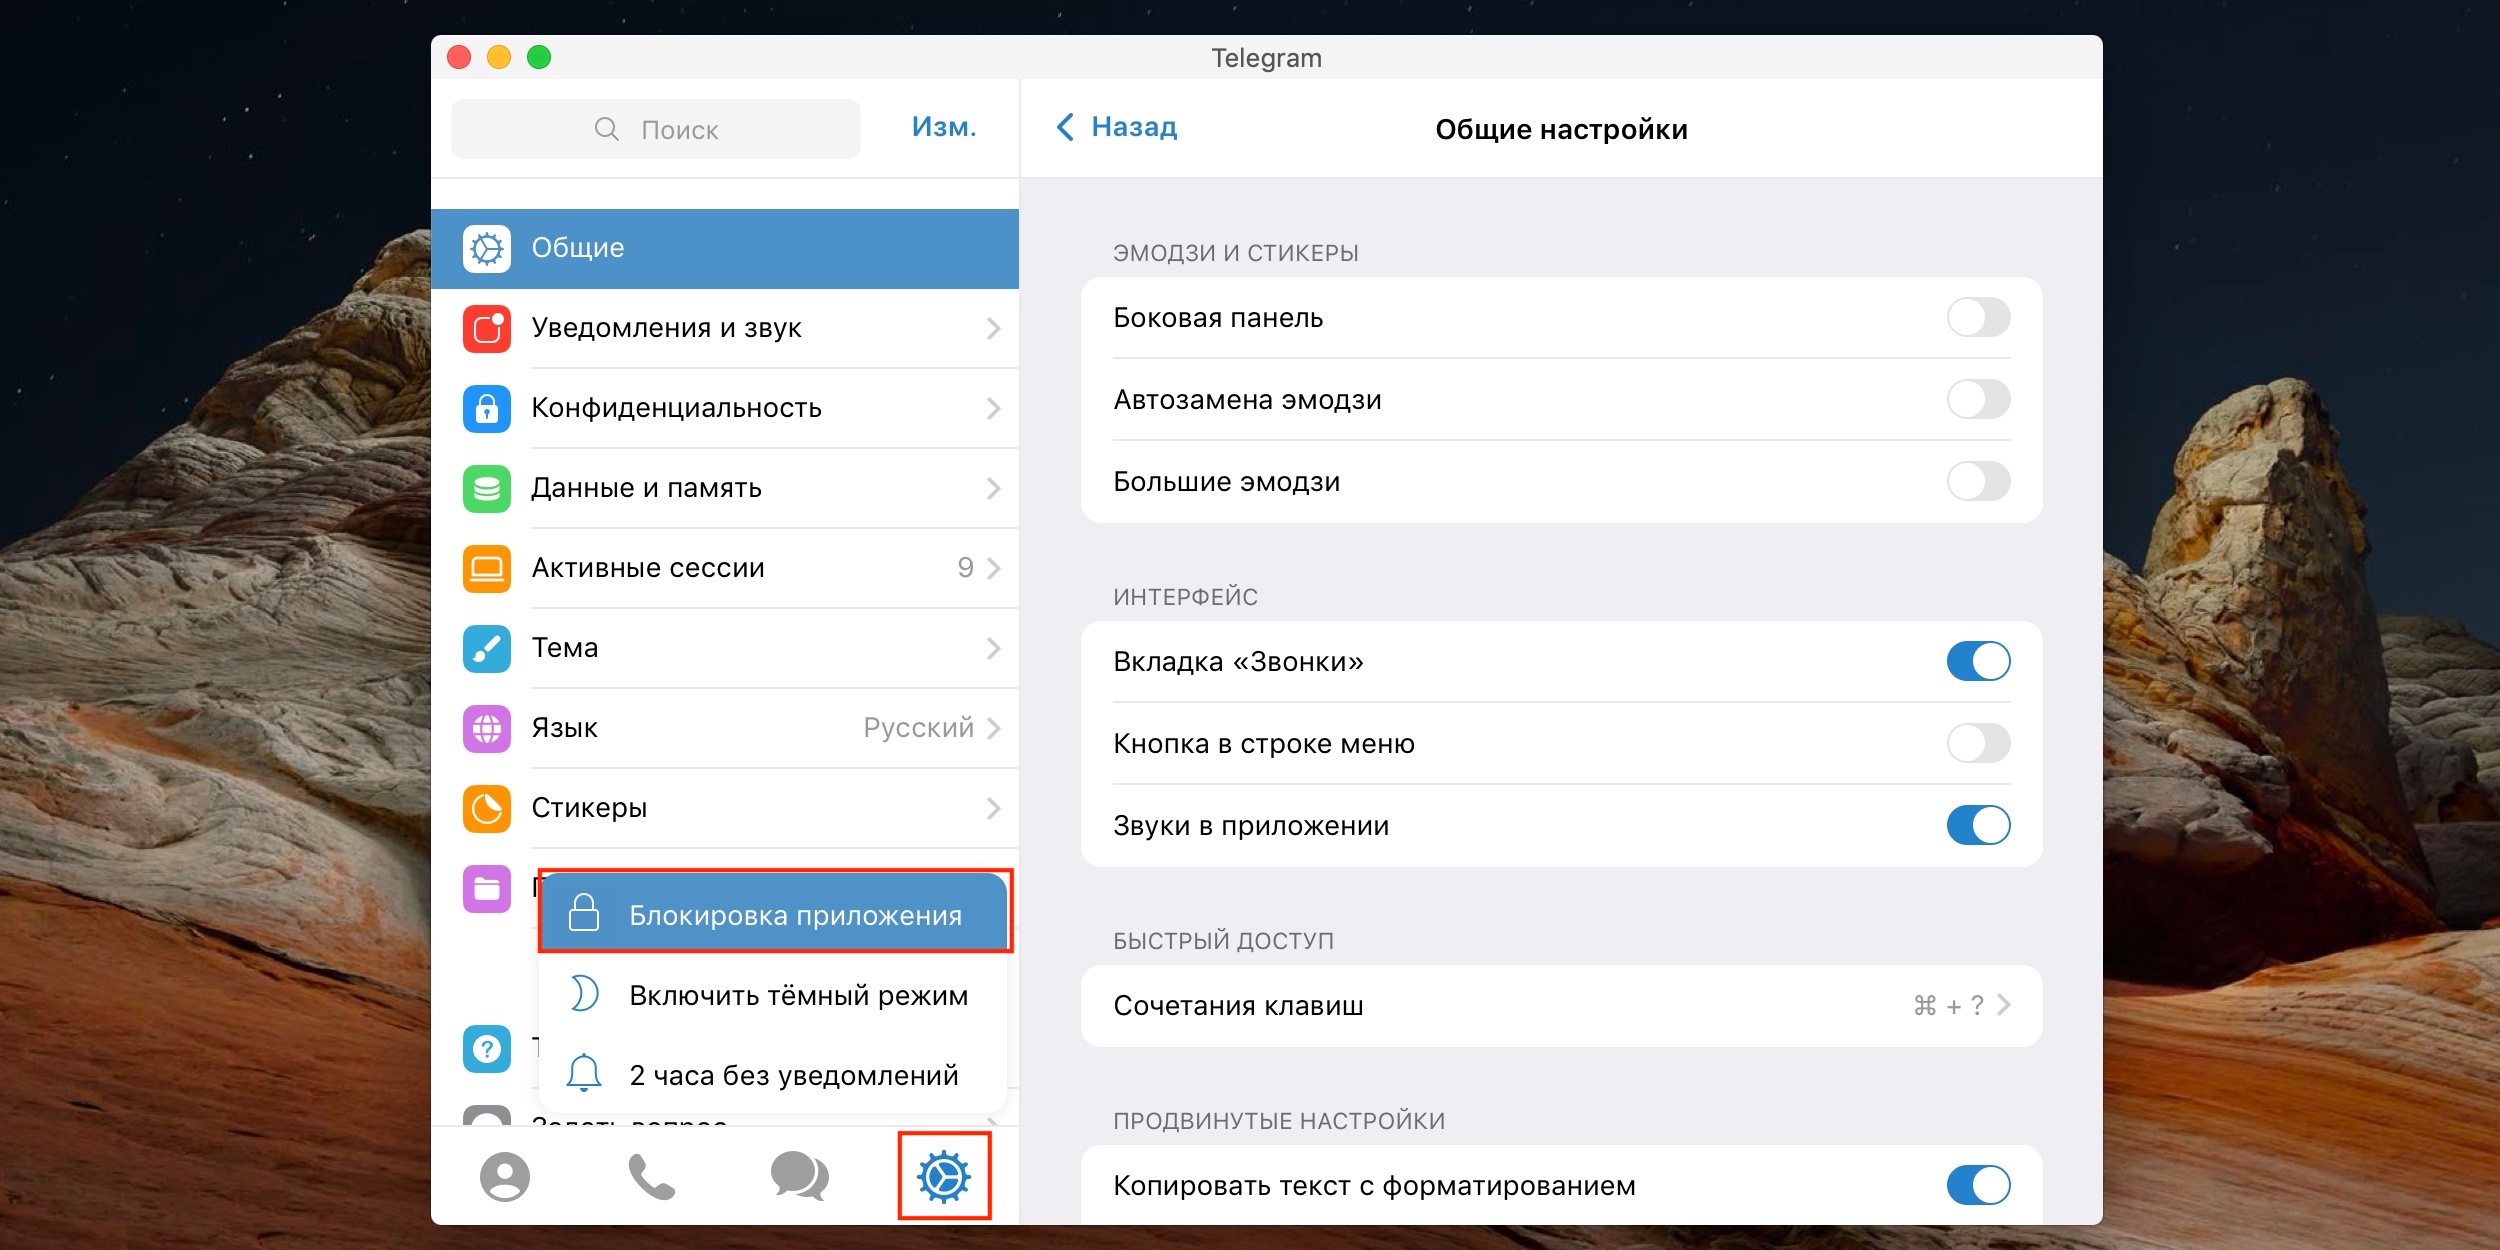 Как установить телеграмм на телефон на русском языке бесплатно пошагово без регистрации фото 87